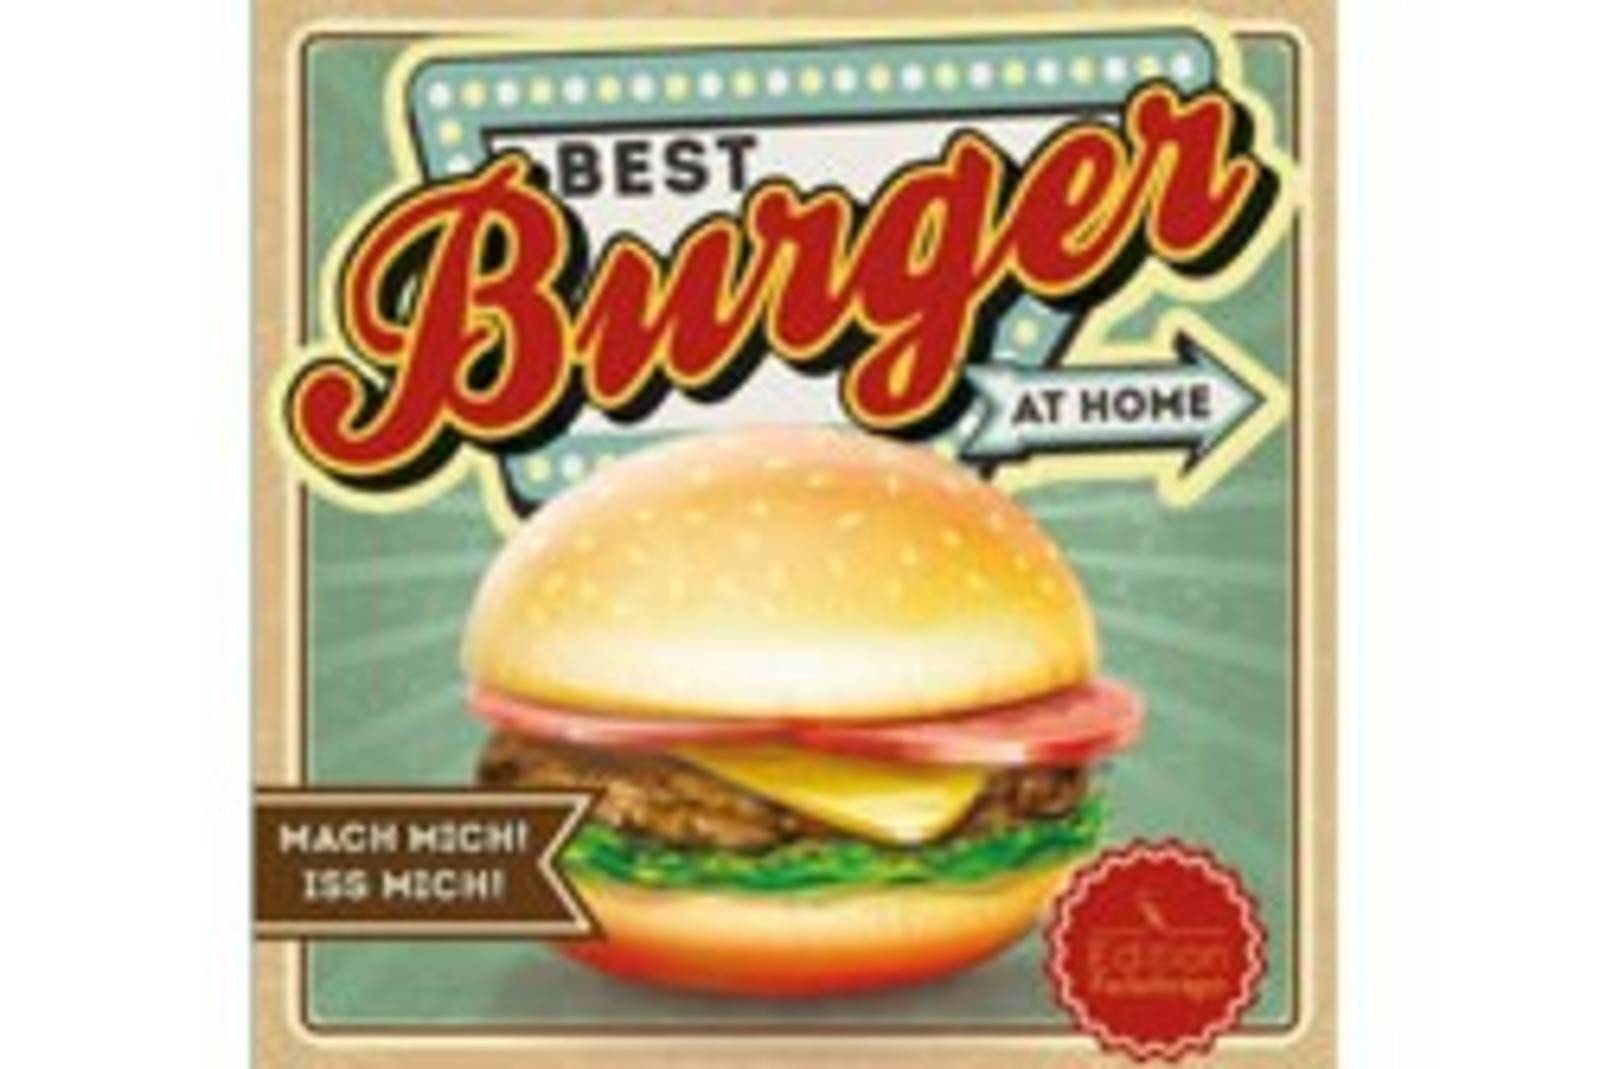 Best Burger at home / Edition Fackelträger